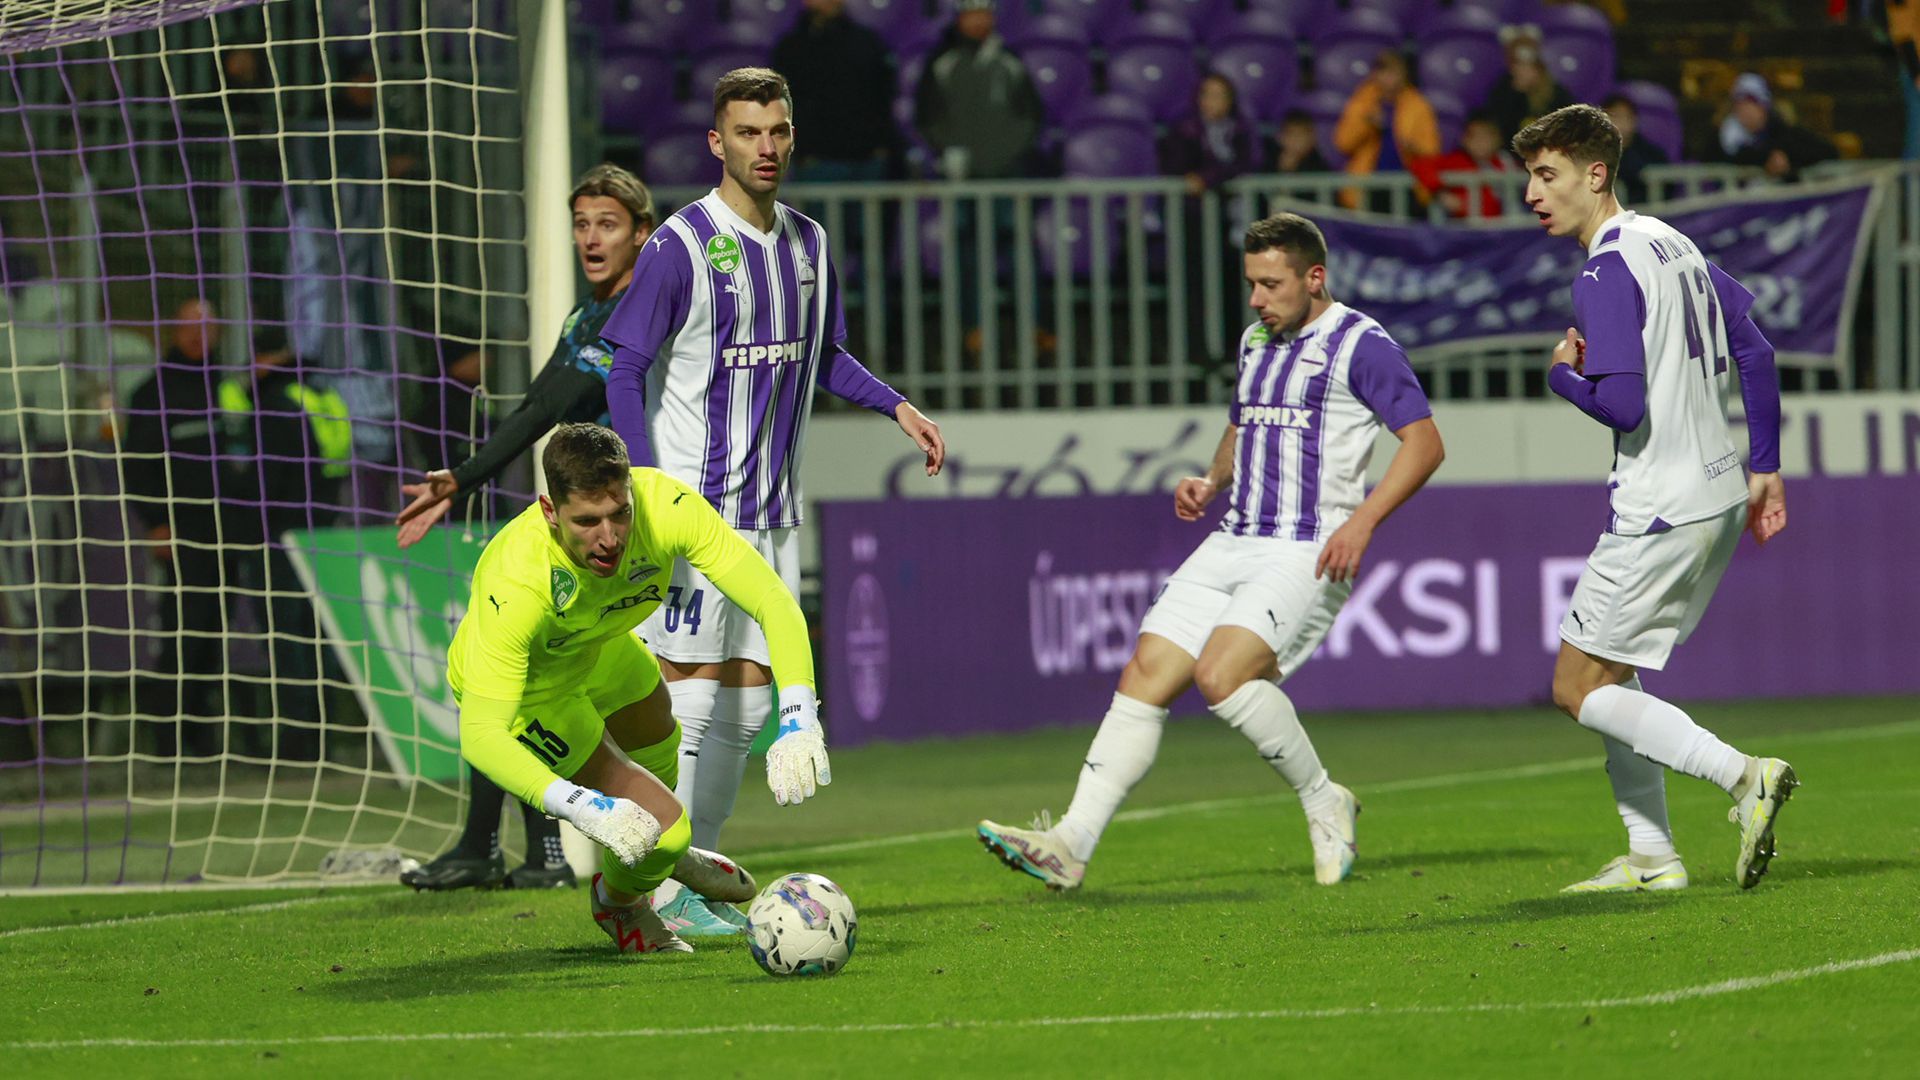 Hiába a rendkívüli biztosítás az újpesti védelemben, a lilák gólt kaptak az első félidőben. (Fotó: Knap Zoltán)